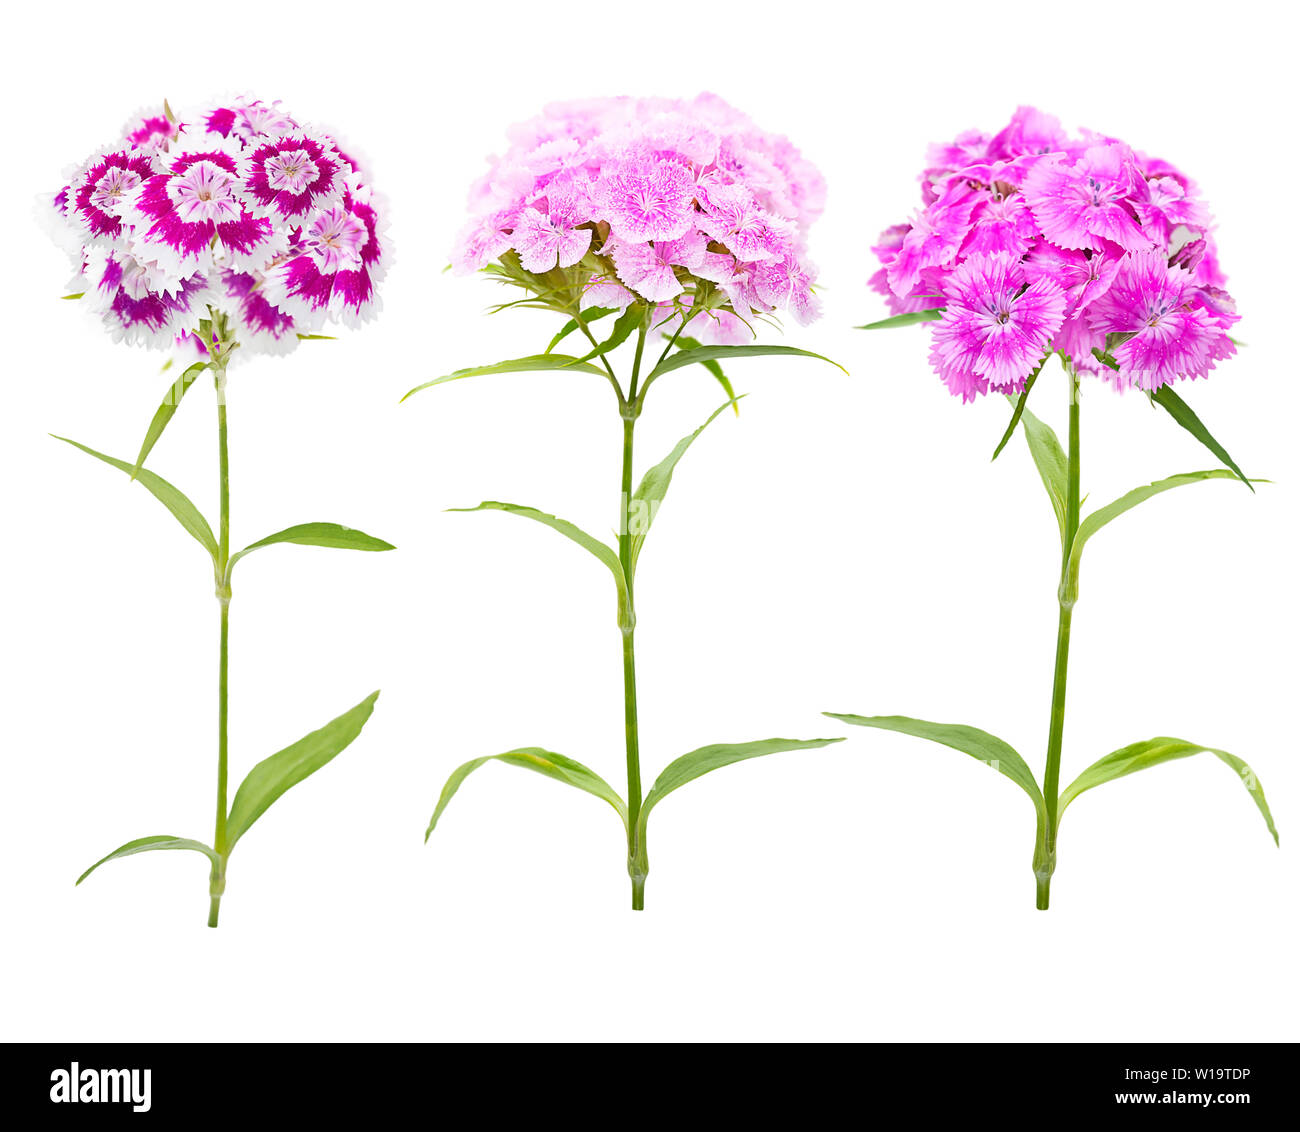 Rosa e viola i fiori di garofano isolati su sfondo bianco Foto Stock